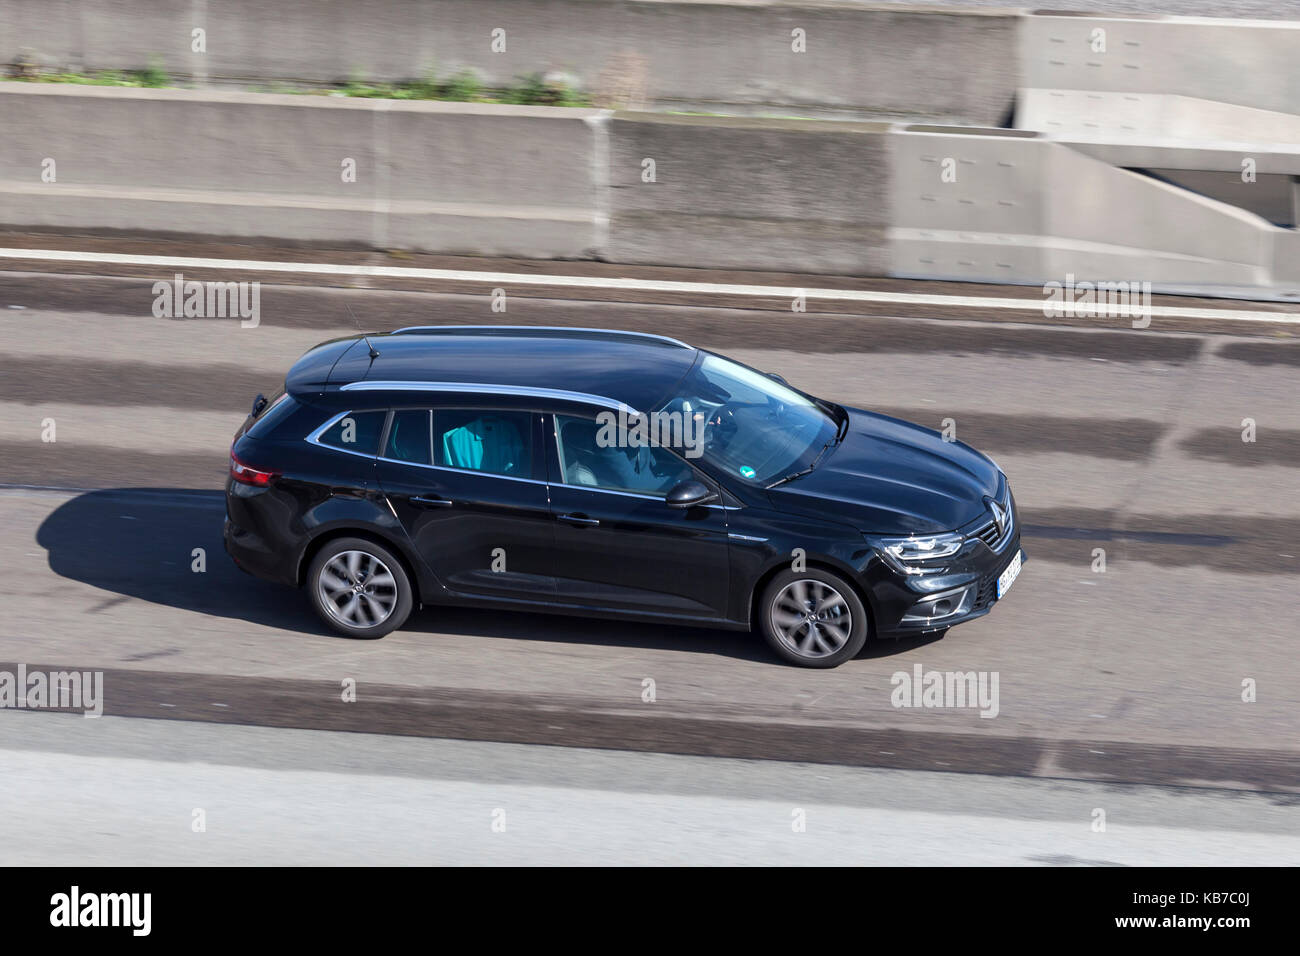 Francfort, Allemagne - Sep 19, 2017 : Renault Mégane grandtour noire roulant sur l'autoroute en Allemagne Banque D'Images